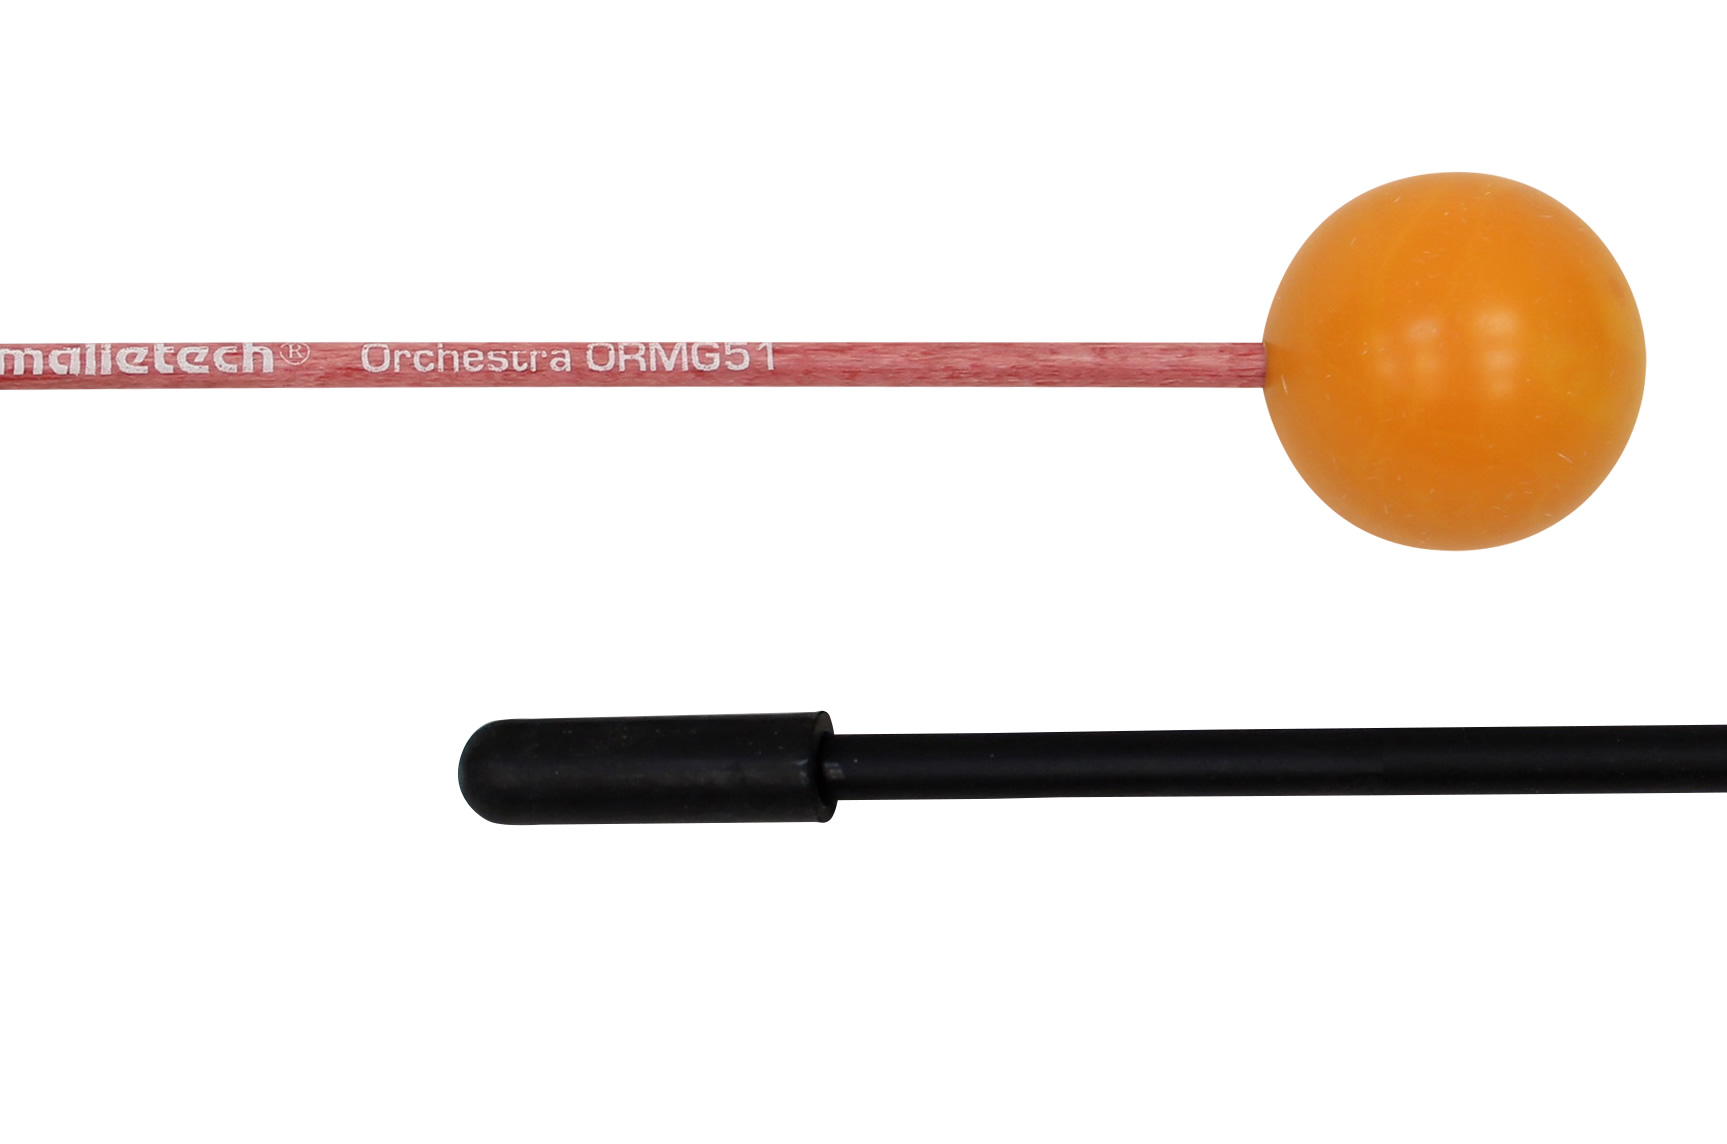 ORMG51 オレンジボール／オーケストラ シリーズ グロッケンマレット